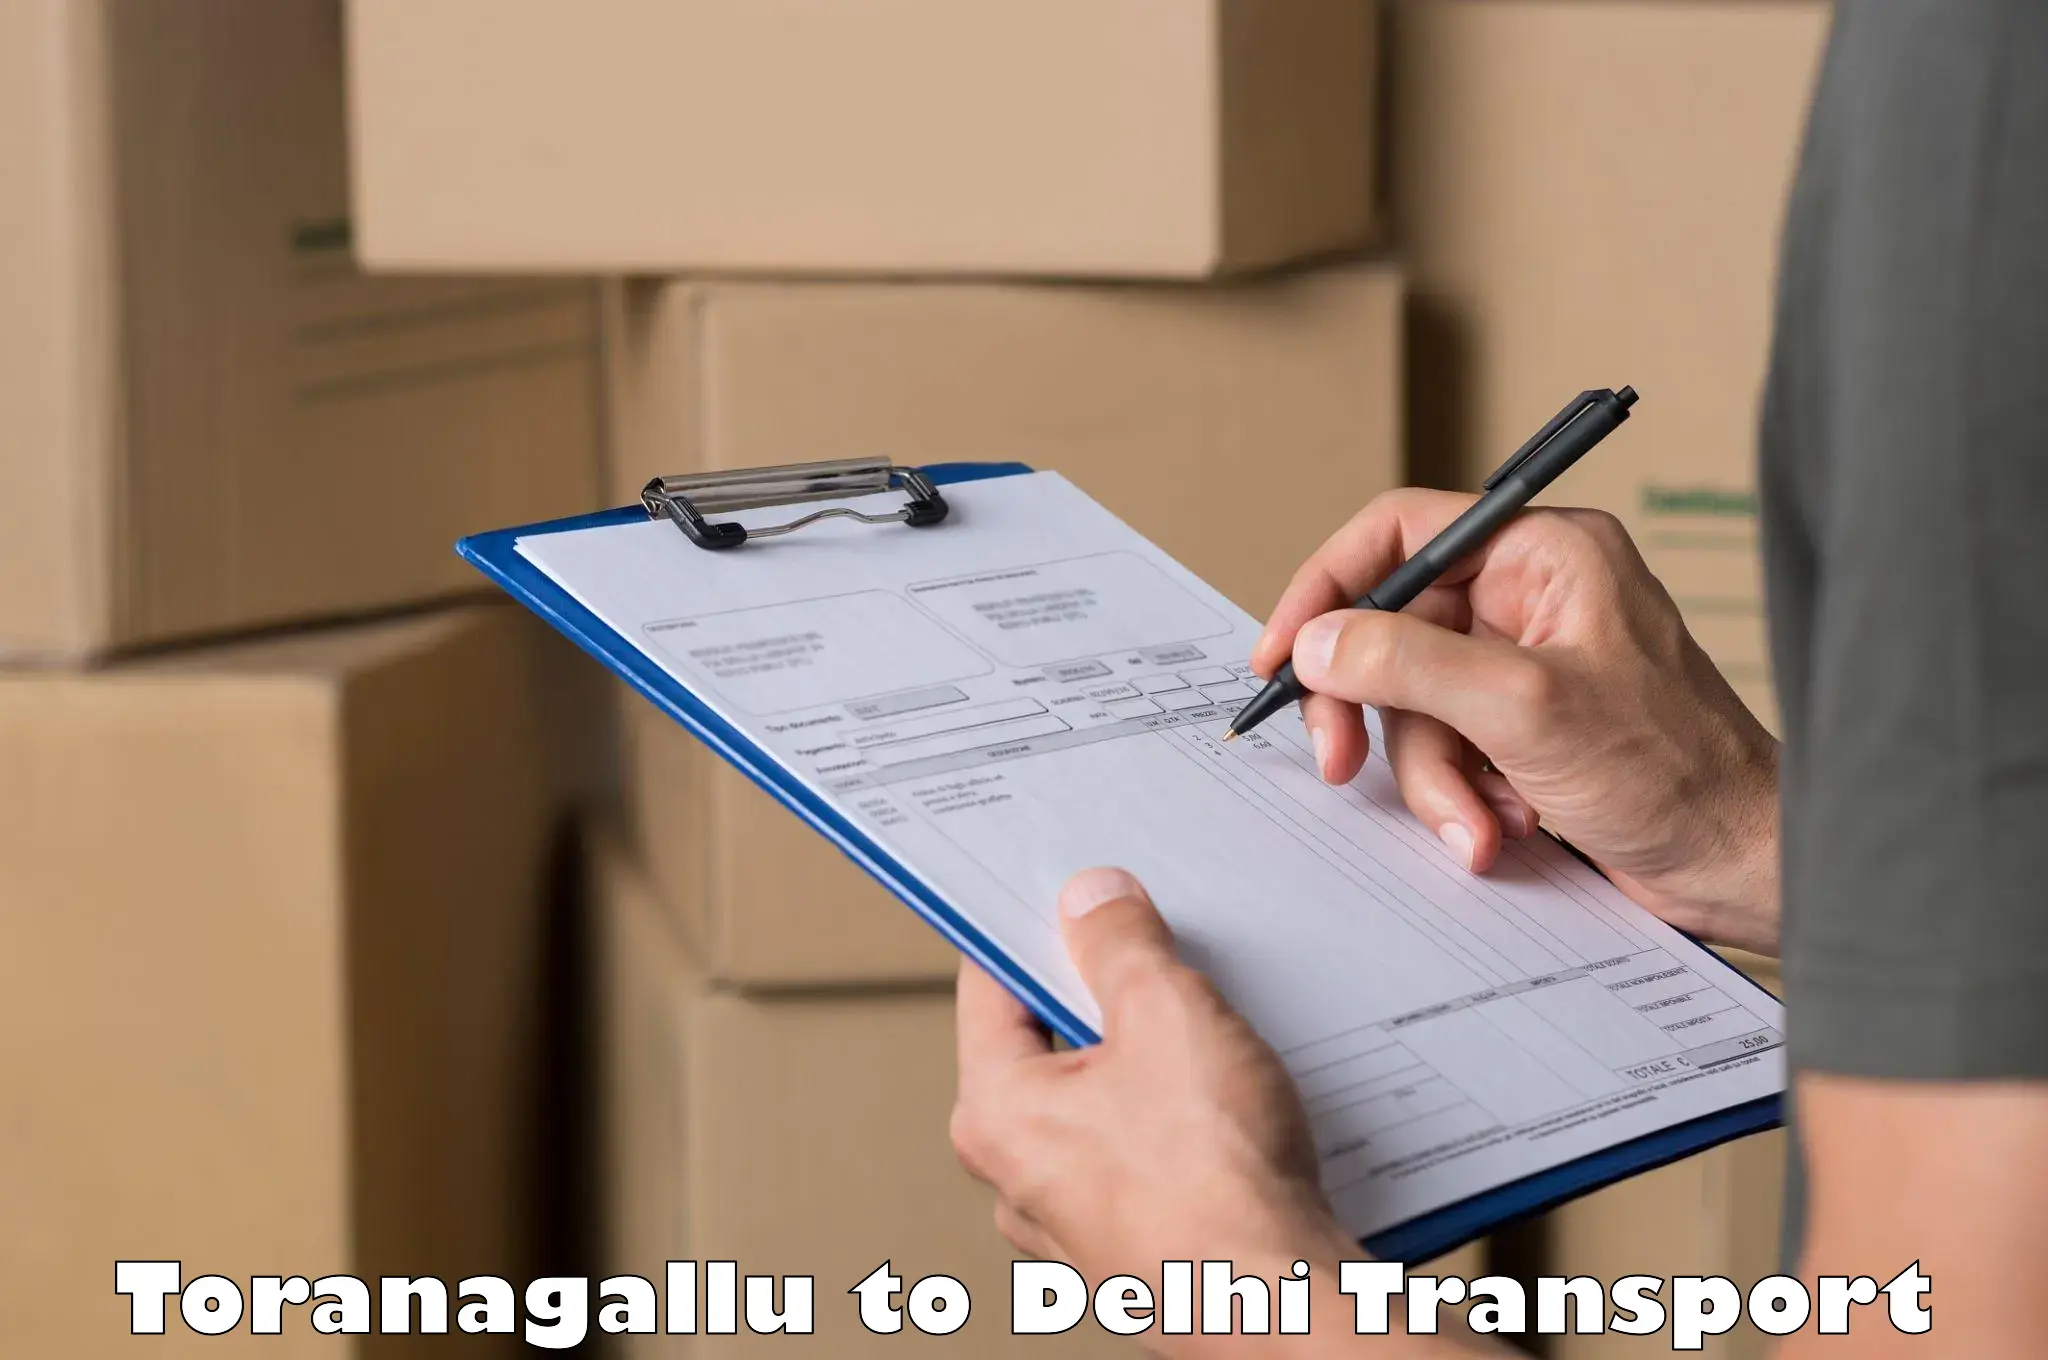 Transport in sharing Toranagallu to University of Delhi